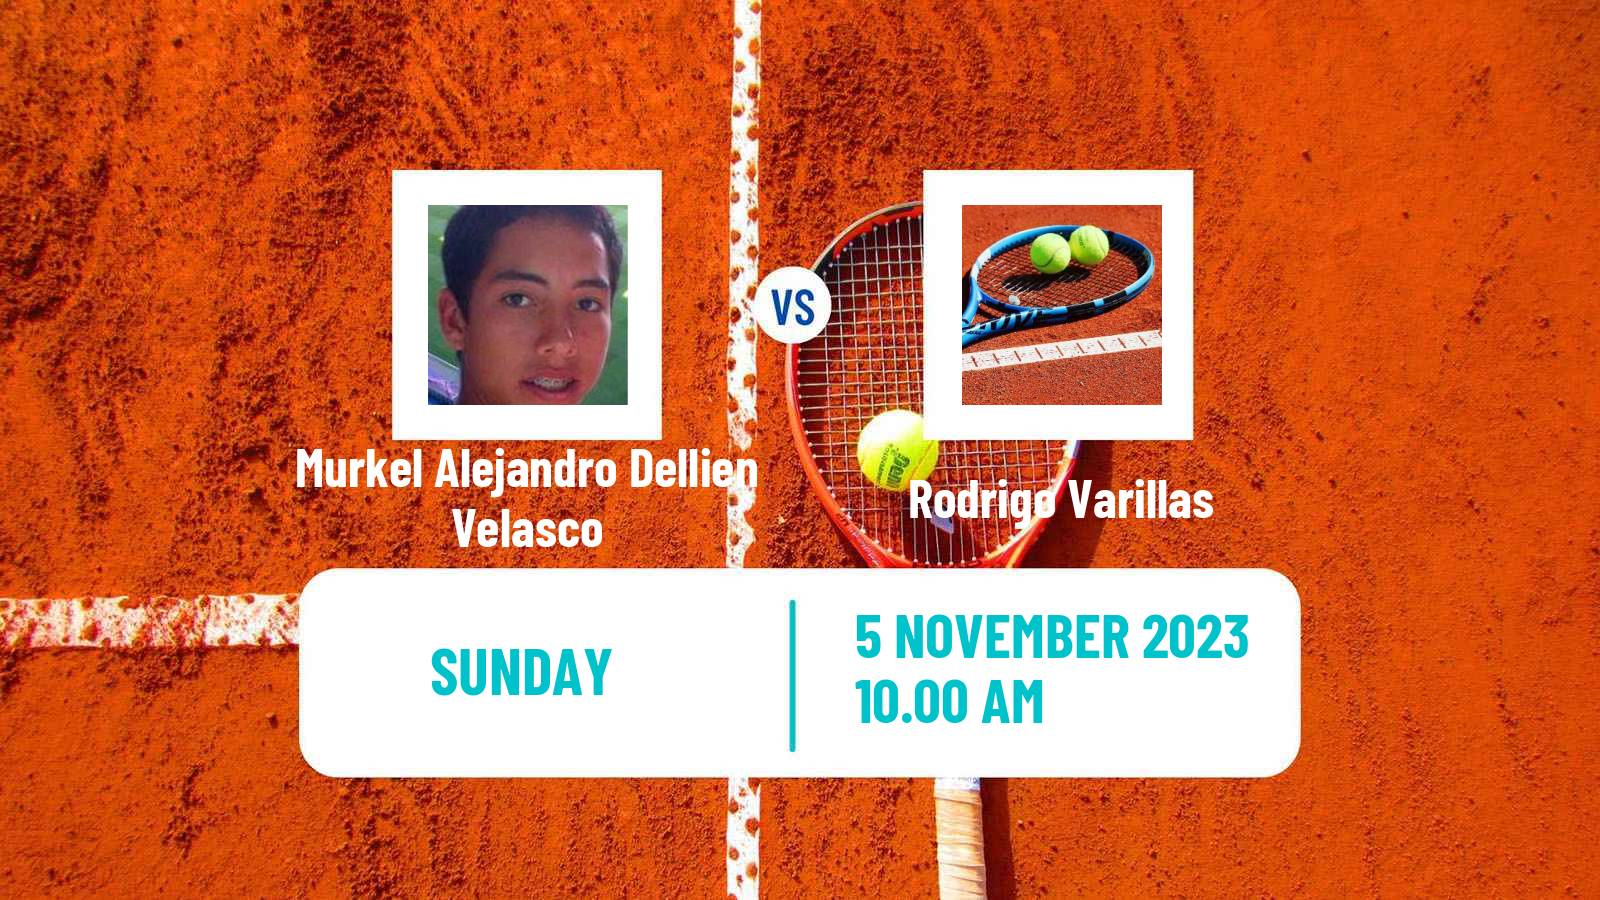 Tennis Lima 2 Challenger Men 2023 Murkel Alejandro Dellien Velasco - Rodrigo Varillas